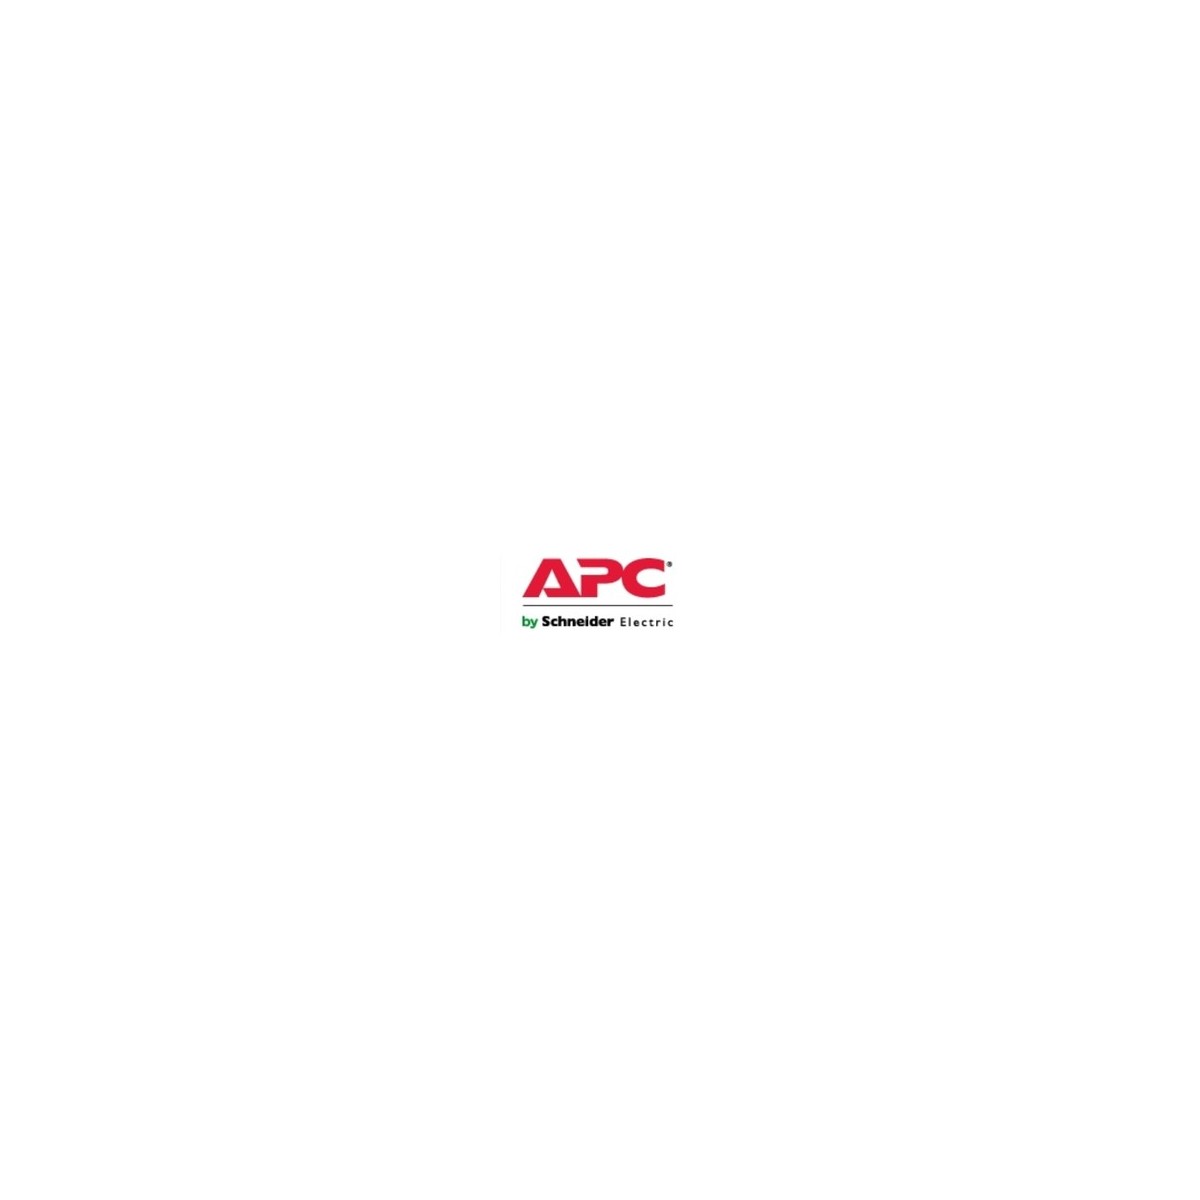 APC WUPGSTRTUP7-UG-02 - 24x7